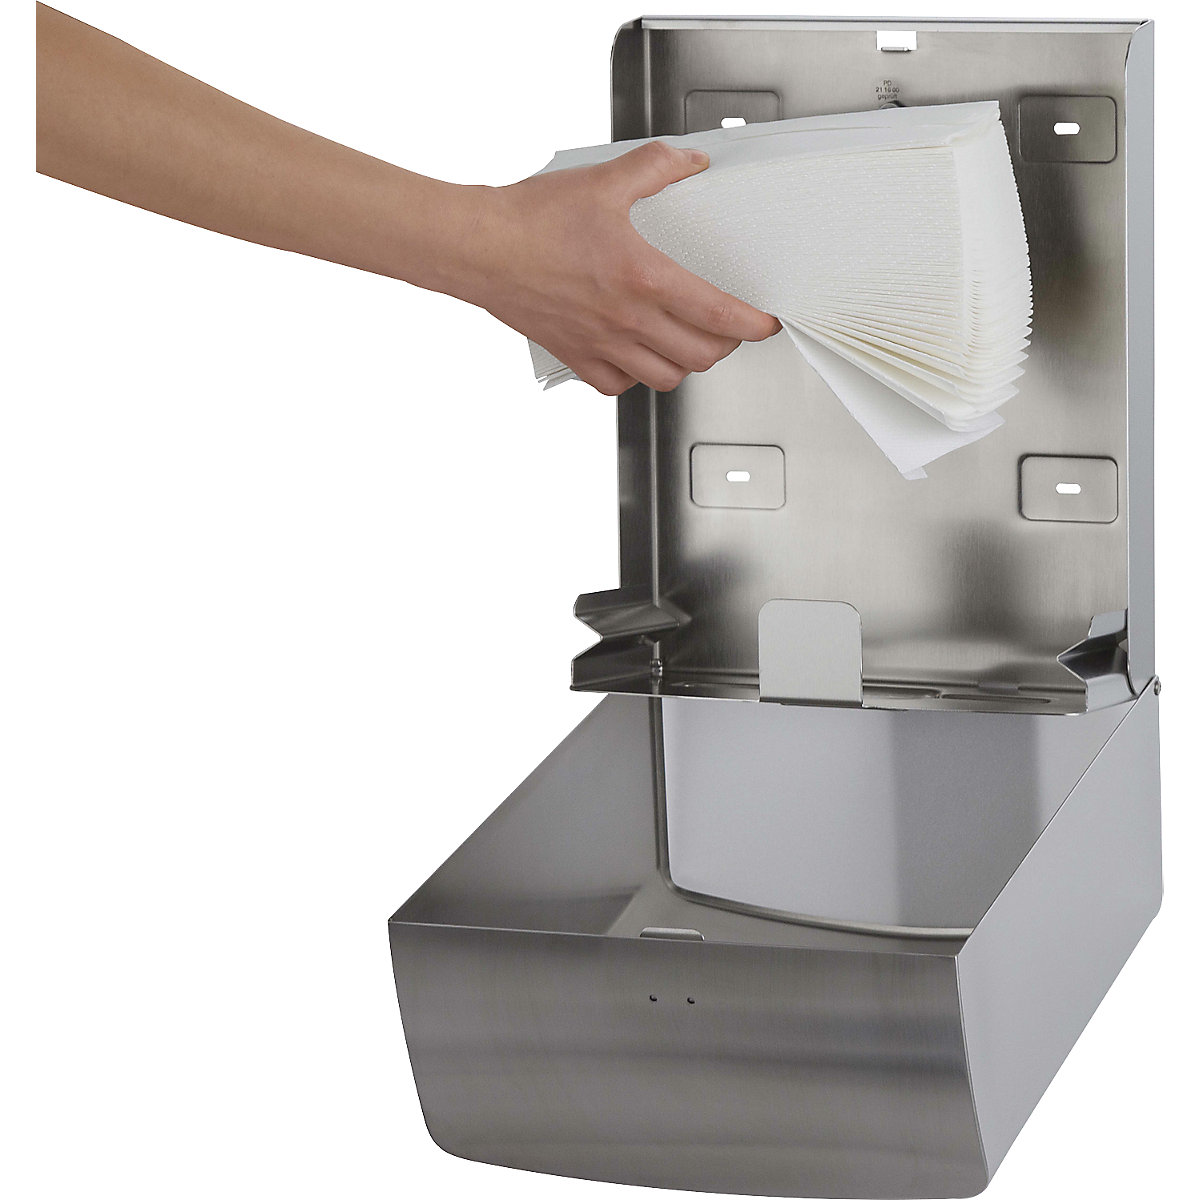 Dispenser in acciaio inox per salviettine di carta – AIR-WOLF (Foto prodotto 4)-3